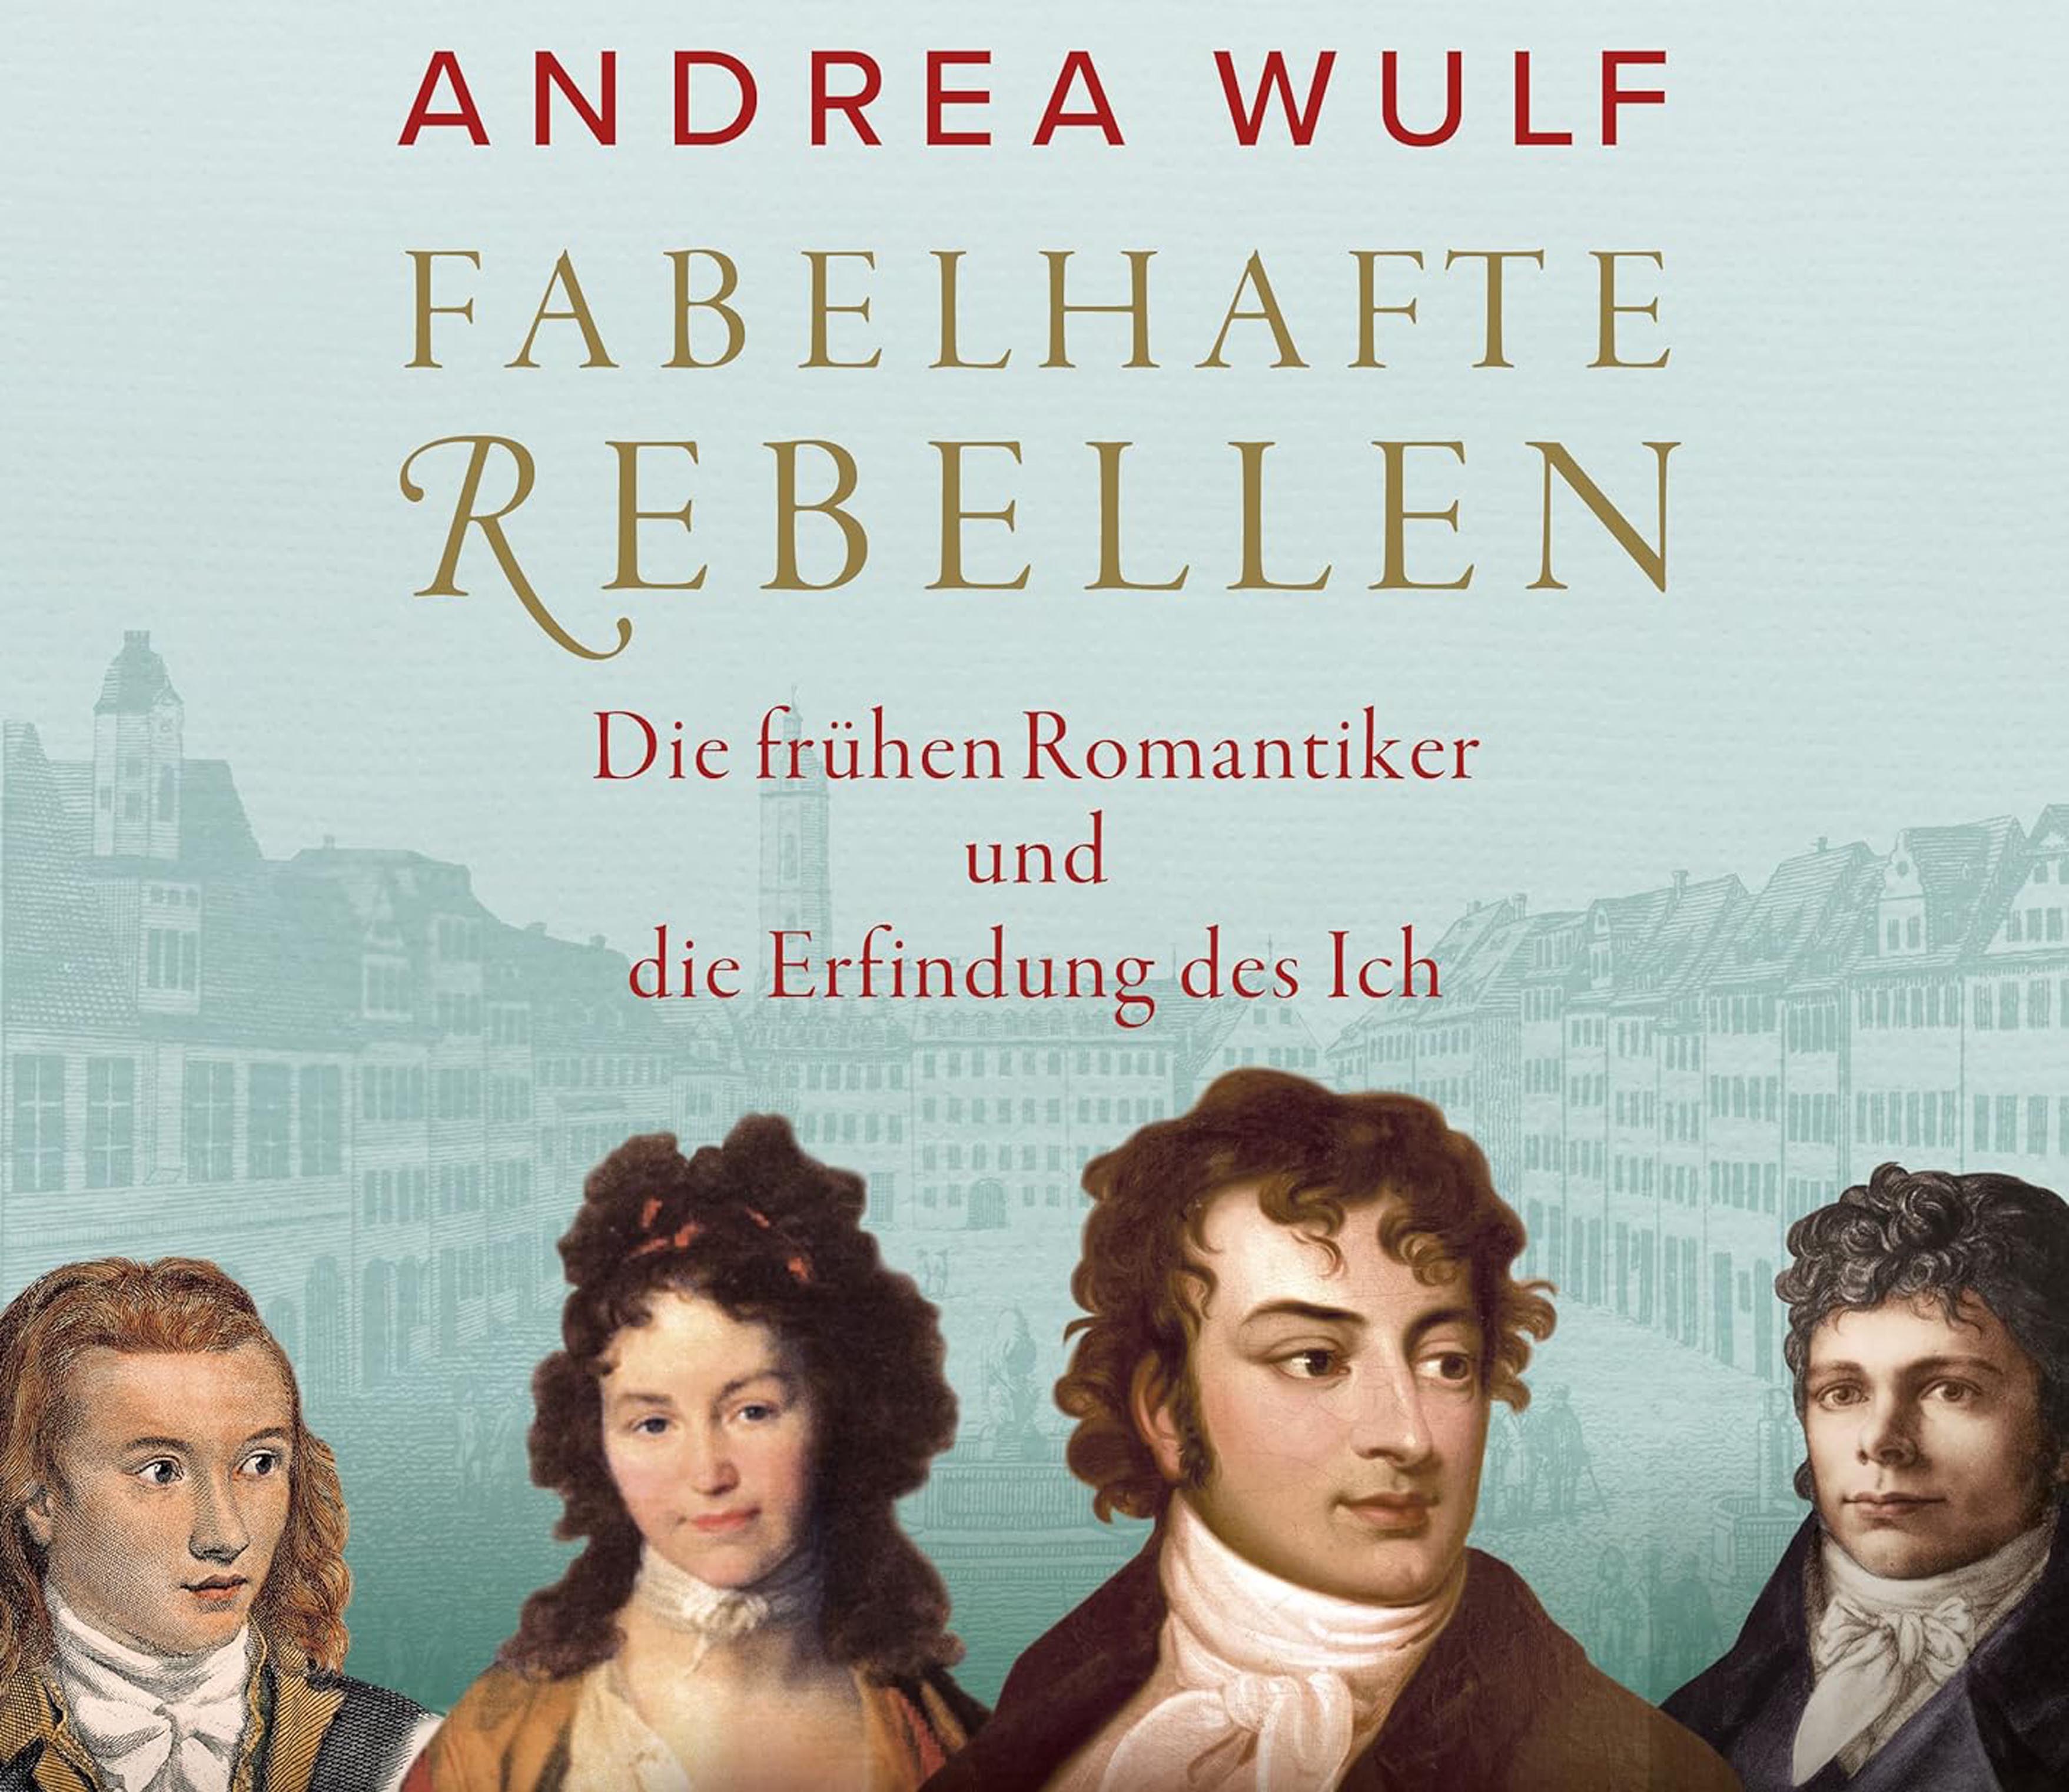 Andrea Wulf: Fabelhafte Rebellen - die frühen Romantiker und die Erfindung des Ich”